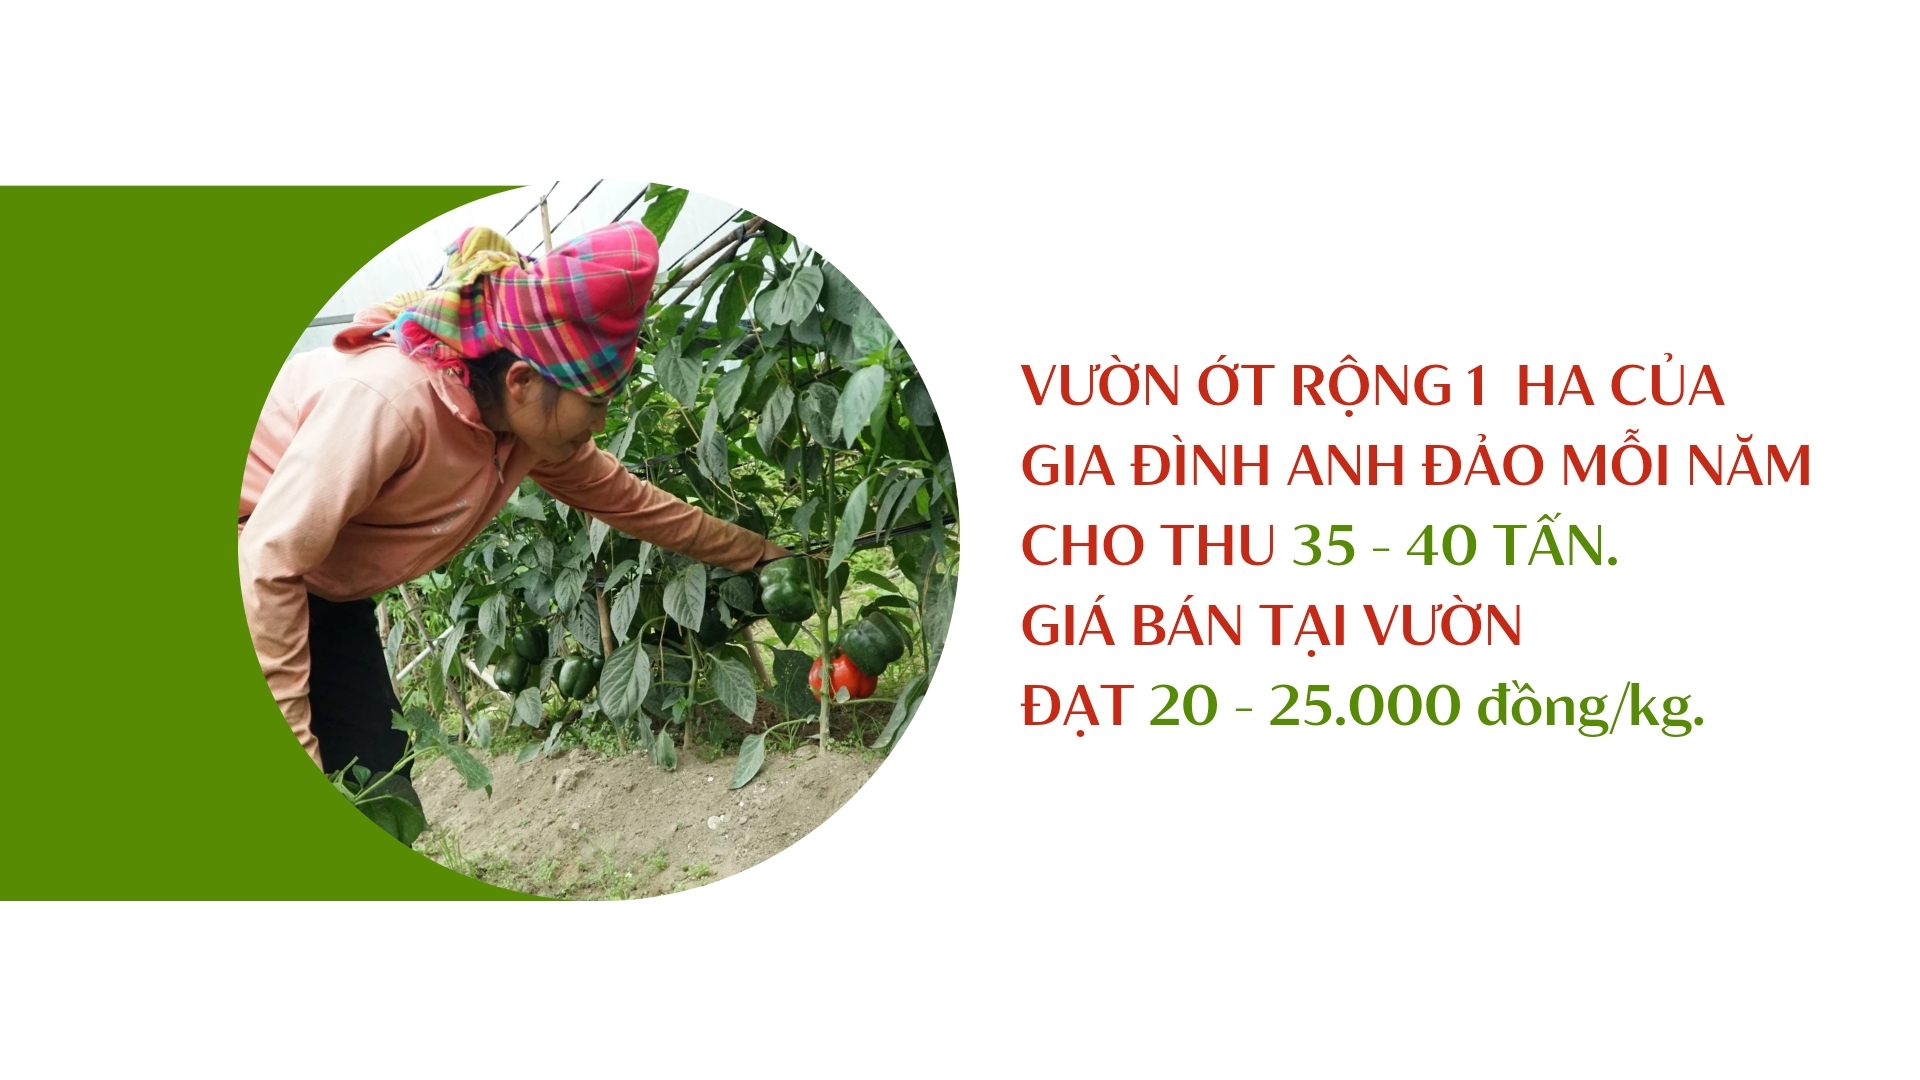 Ớt khổng lồ ở Lào Cai nặng tới 1kg mỗi quả, chẳng cay mà lại ngọt, chế biến thành nhiều đặc sản khó quên - Ảnh 1.